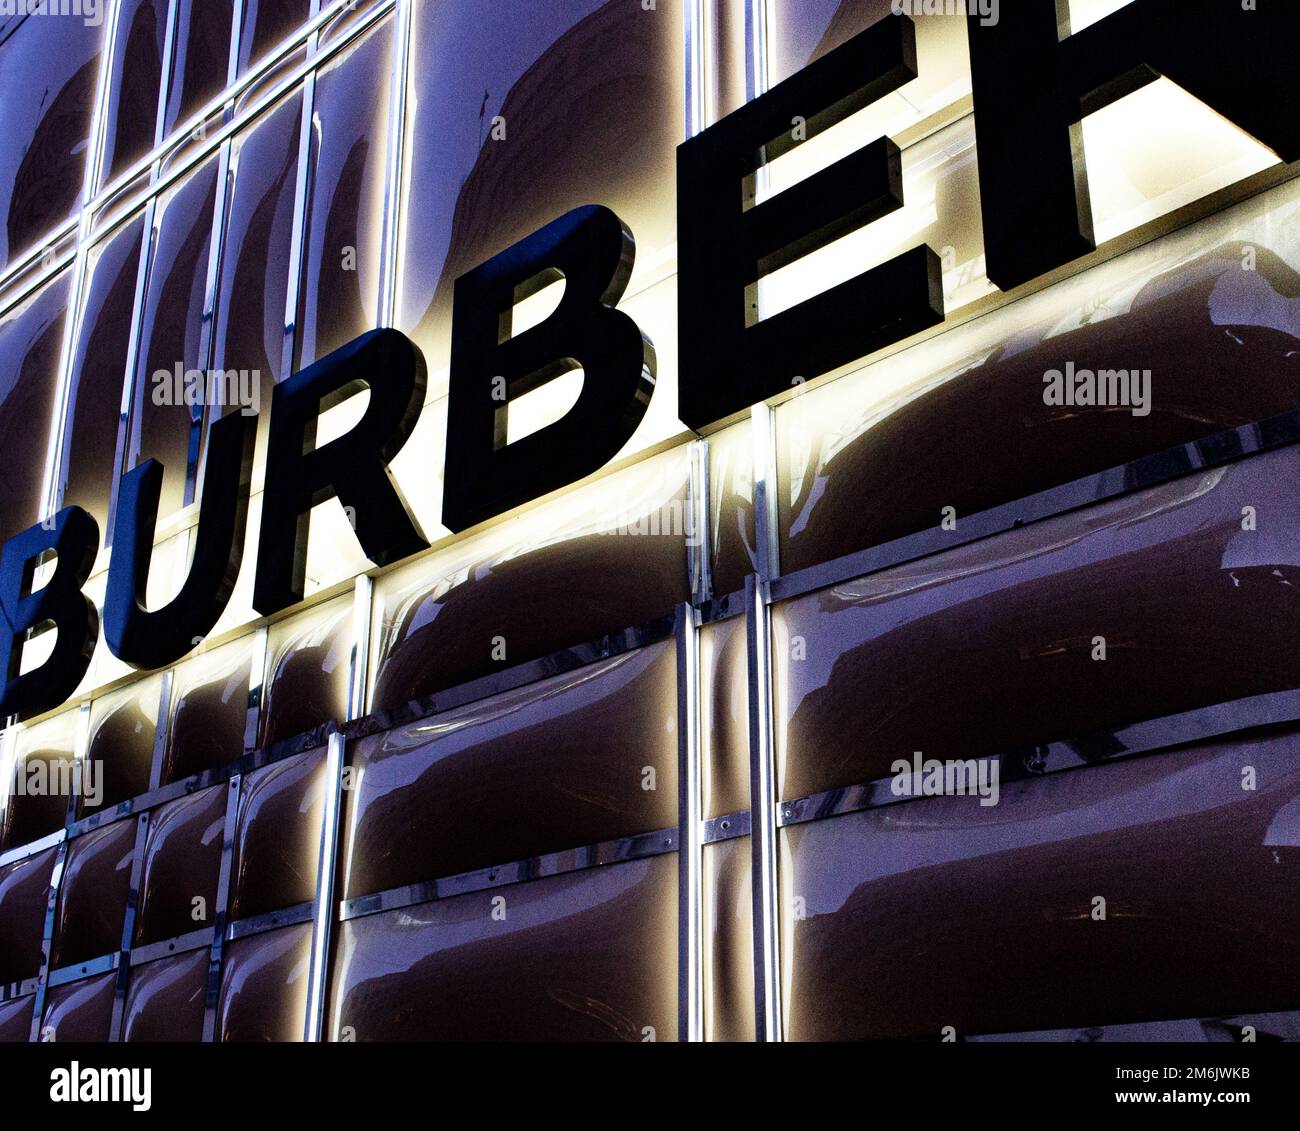 Burberry Storefront/Shop Window/Visual Merchandising des Bond St Stores, London, ein gehobenes, wohlhabendes, gehobenes, Luxusgeschäft Stockfoto